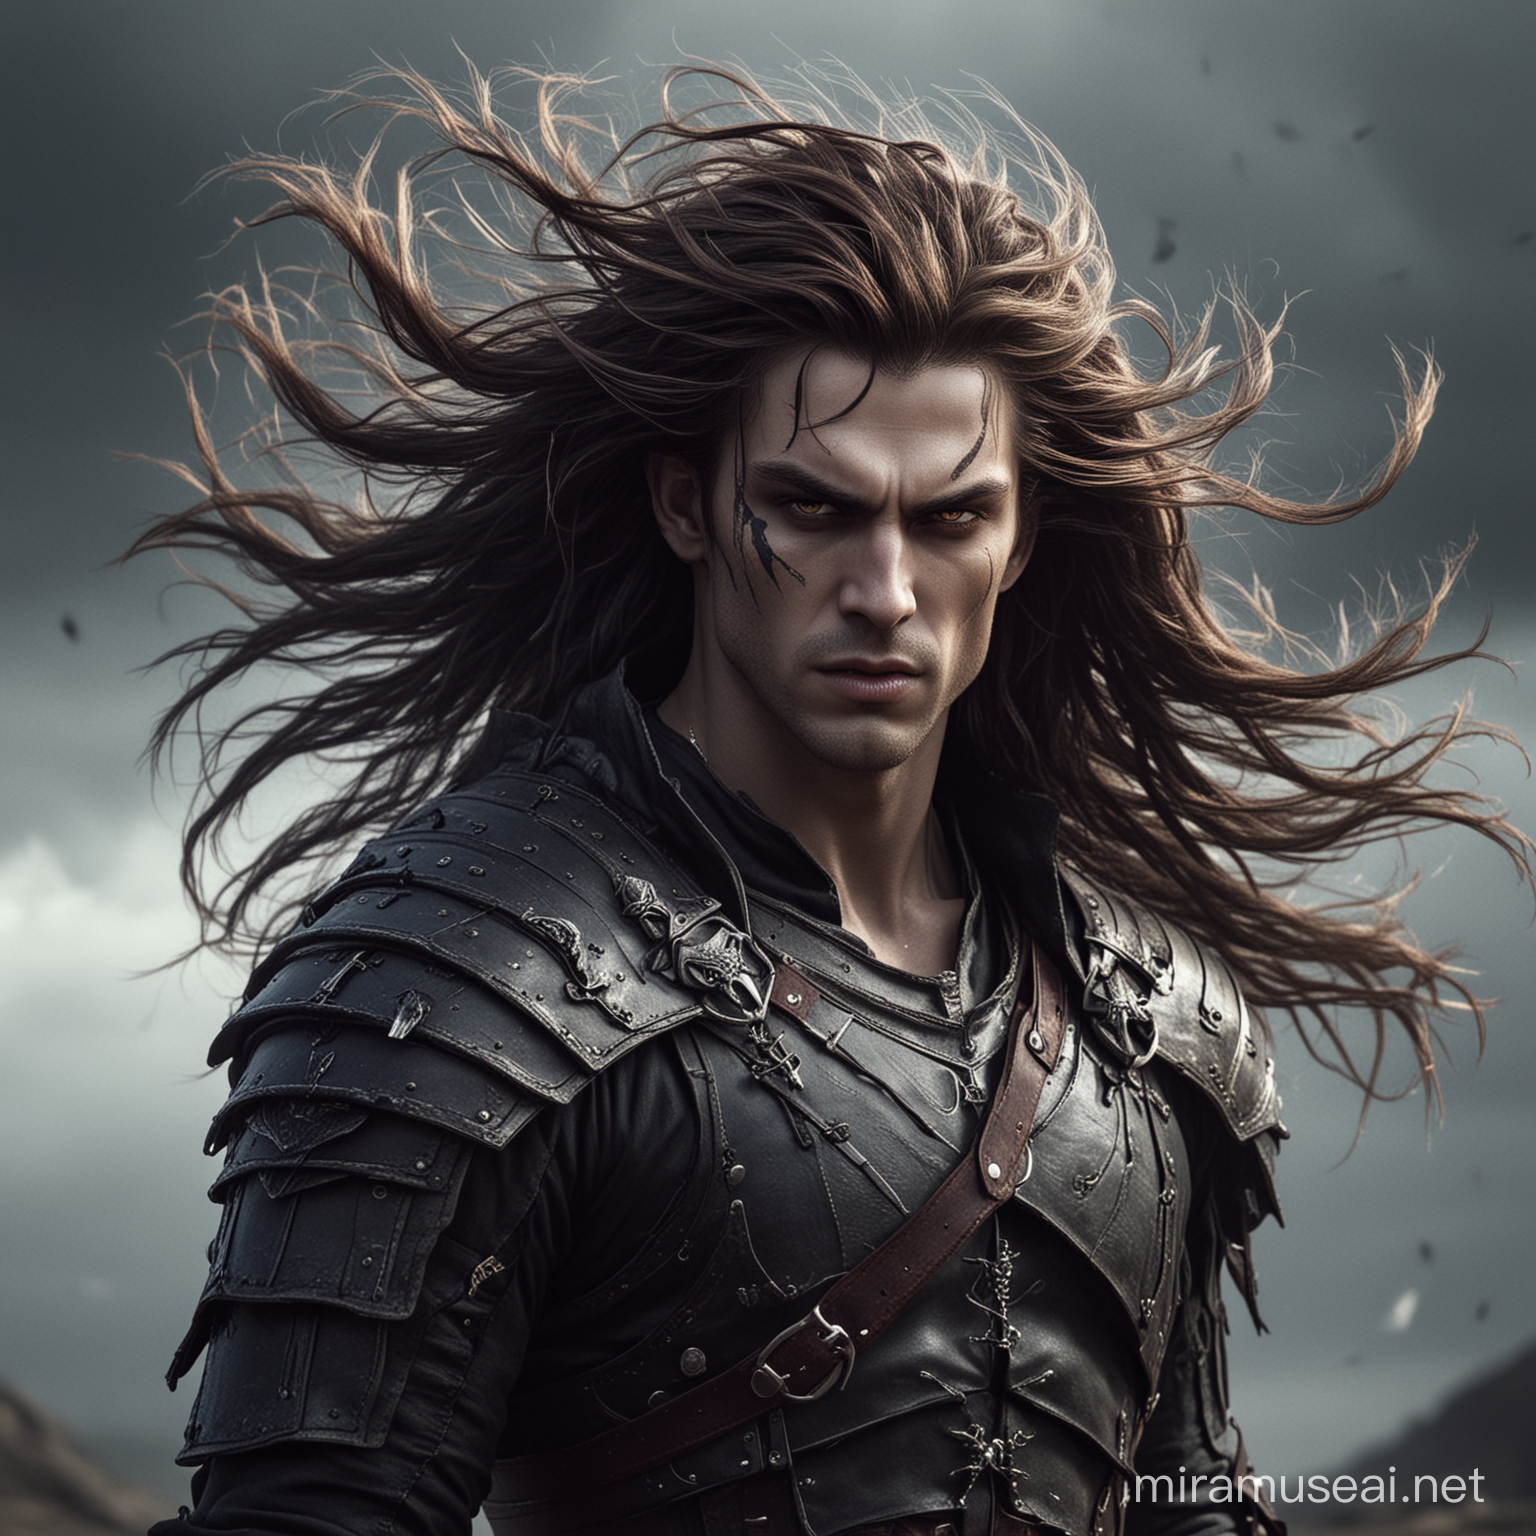 воин-вампир из недалёкогос будущего, его волосы развиваются на ветру